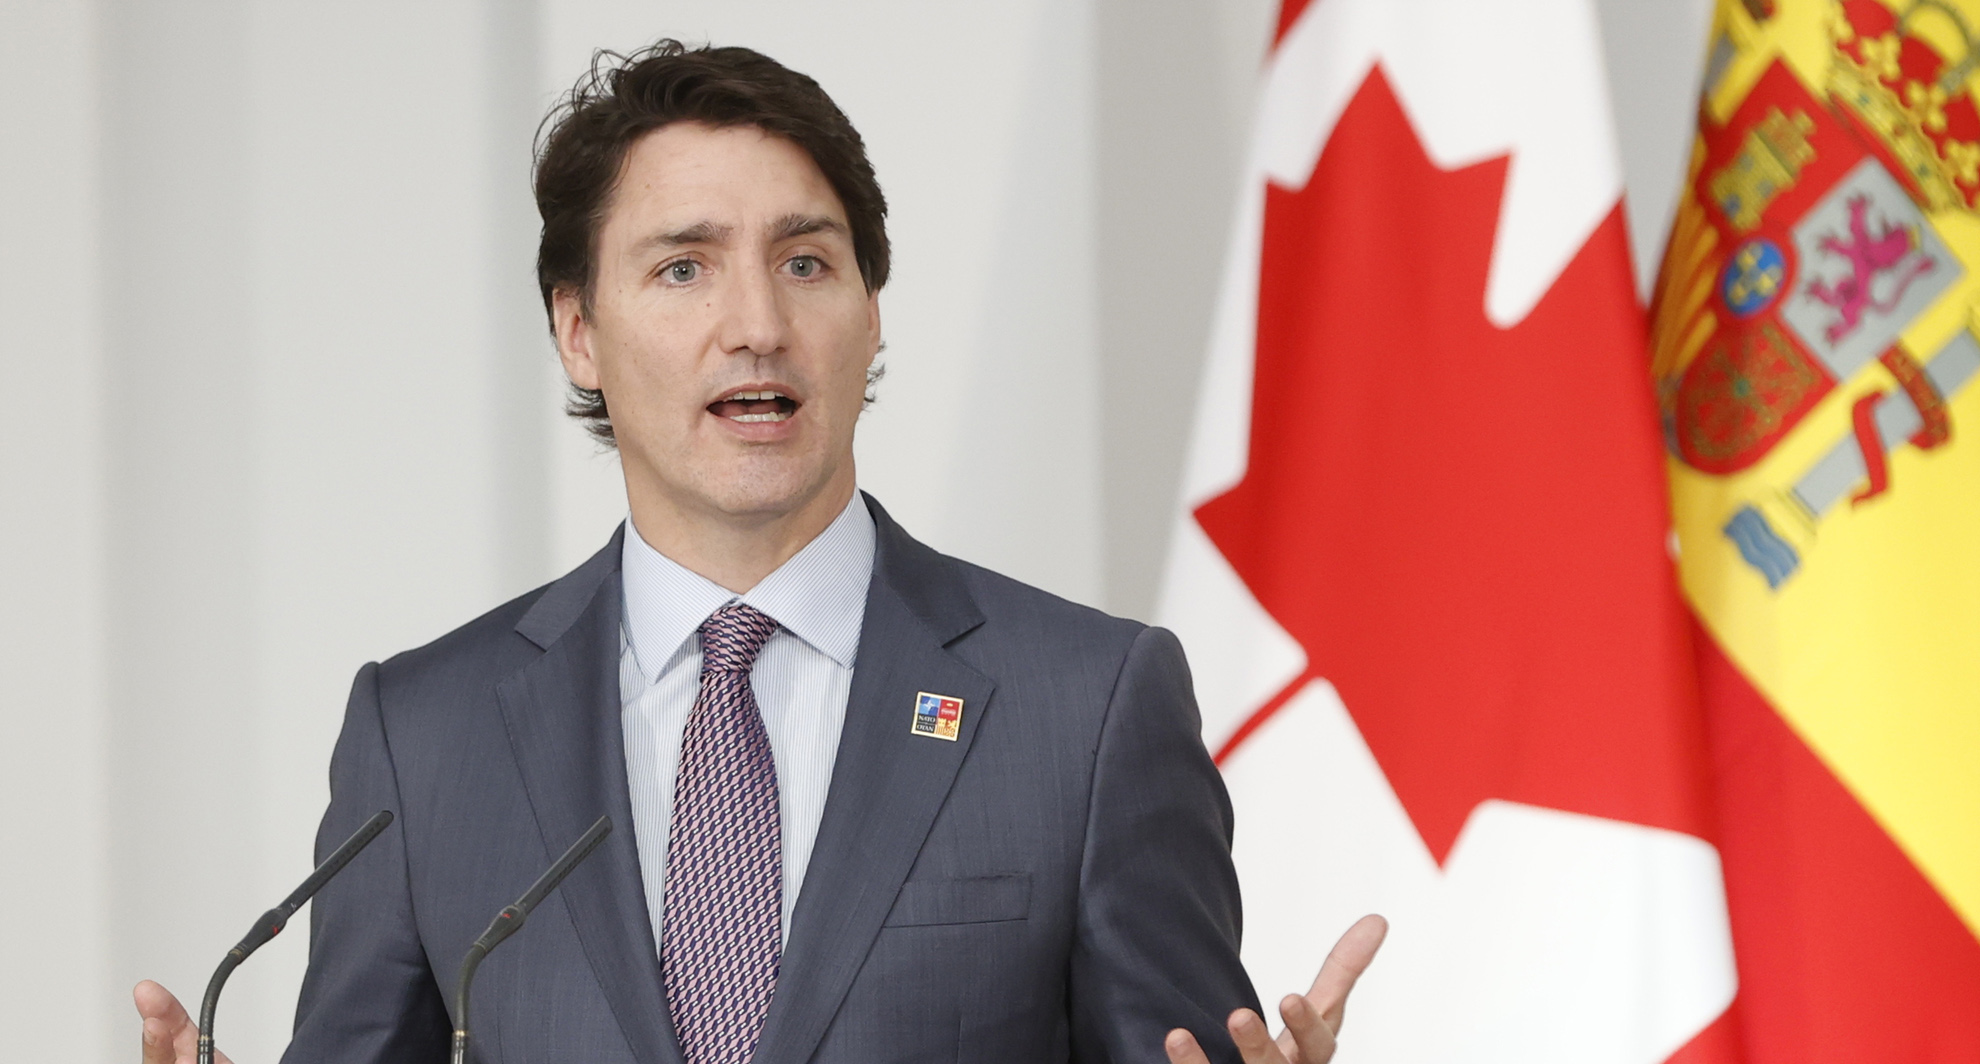 Trudeau cataloga como “horrorosos” y “desoladores” los ataques que provocaron al menos 10 muertes en Canadá